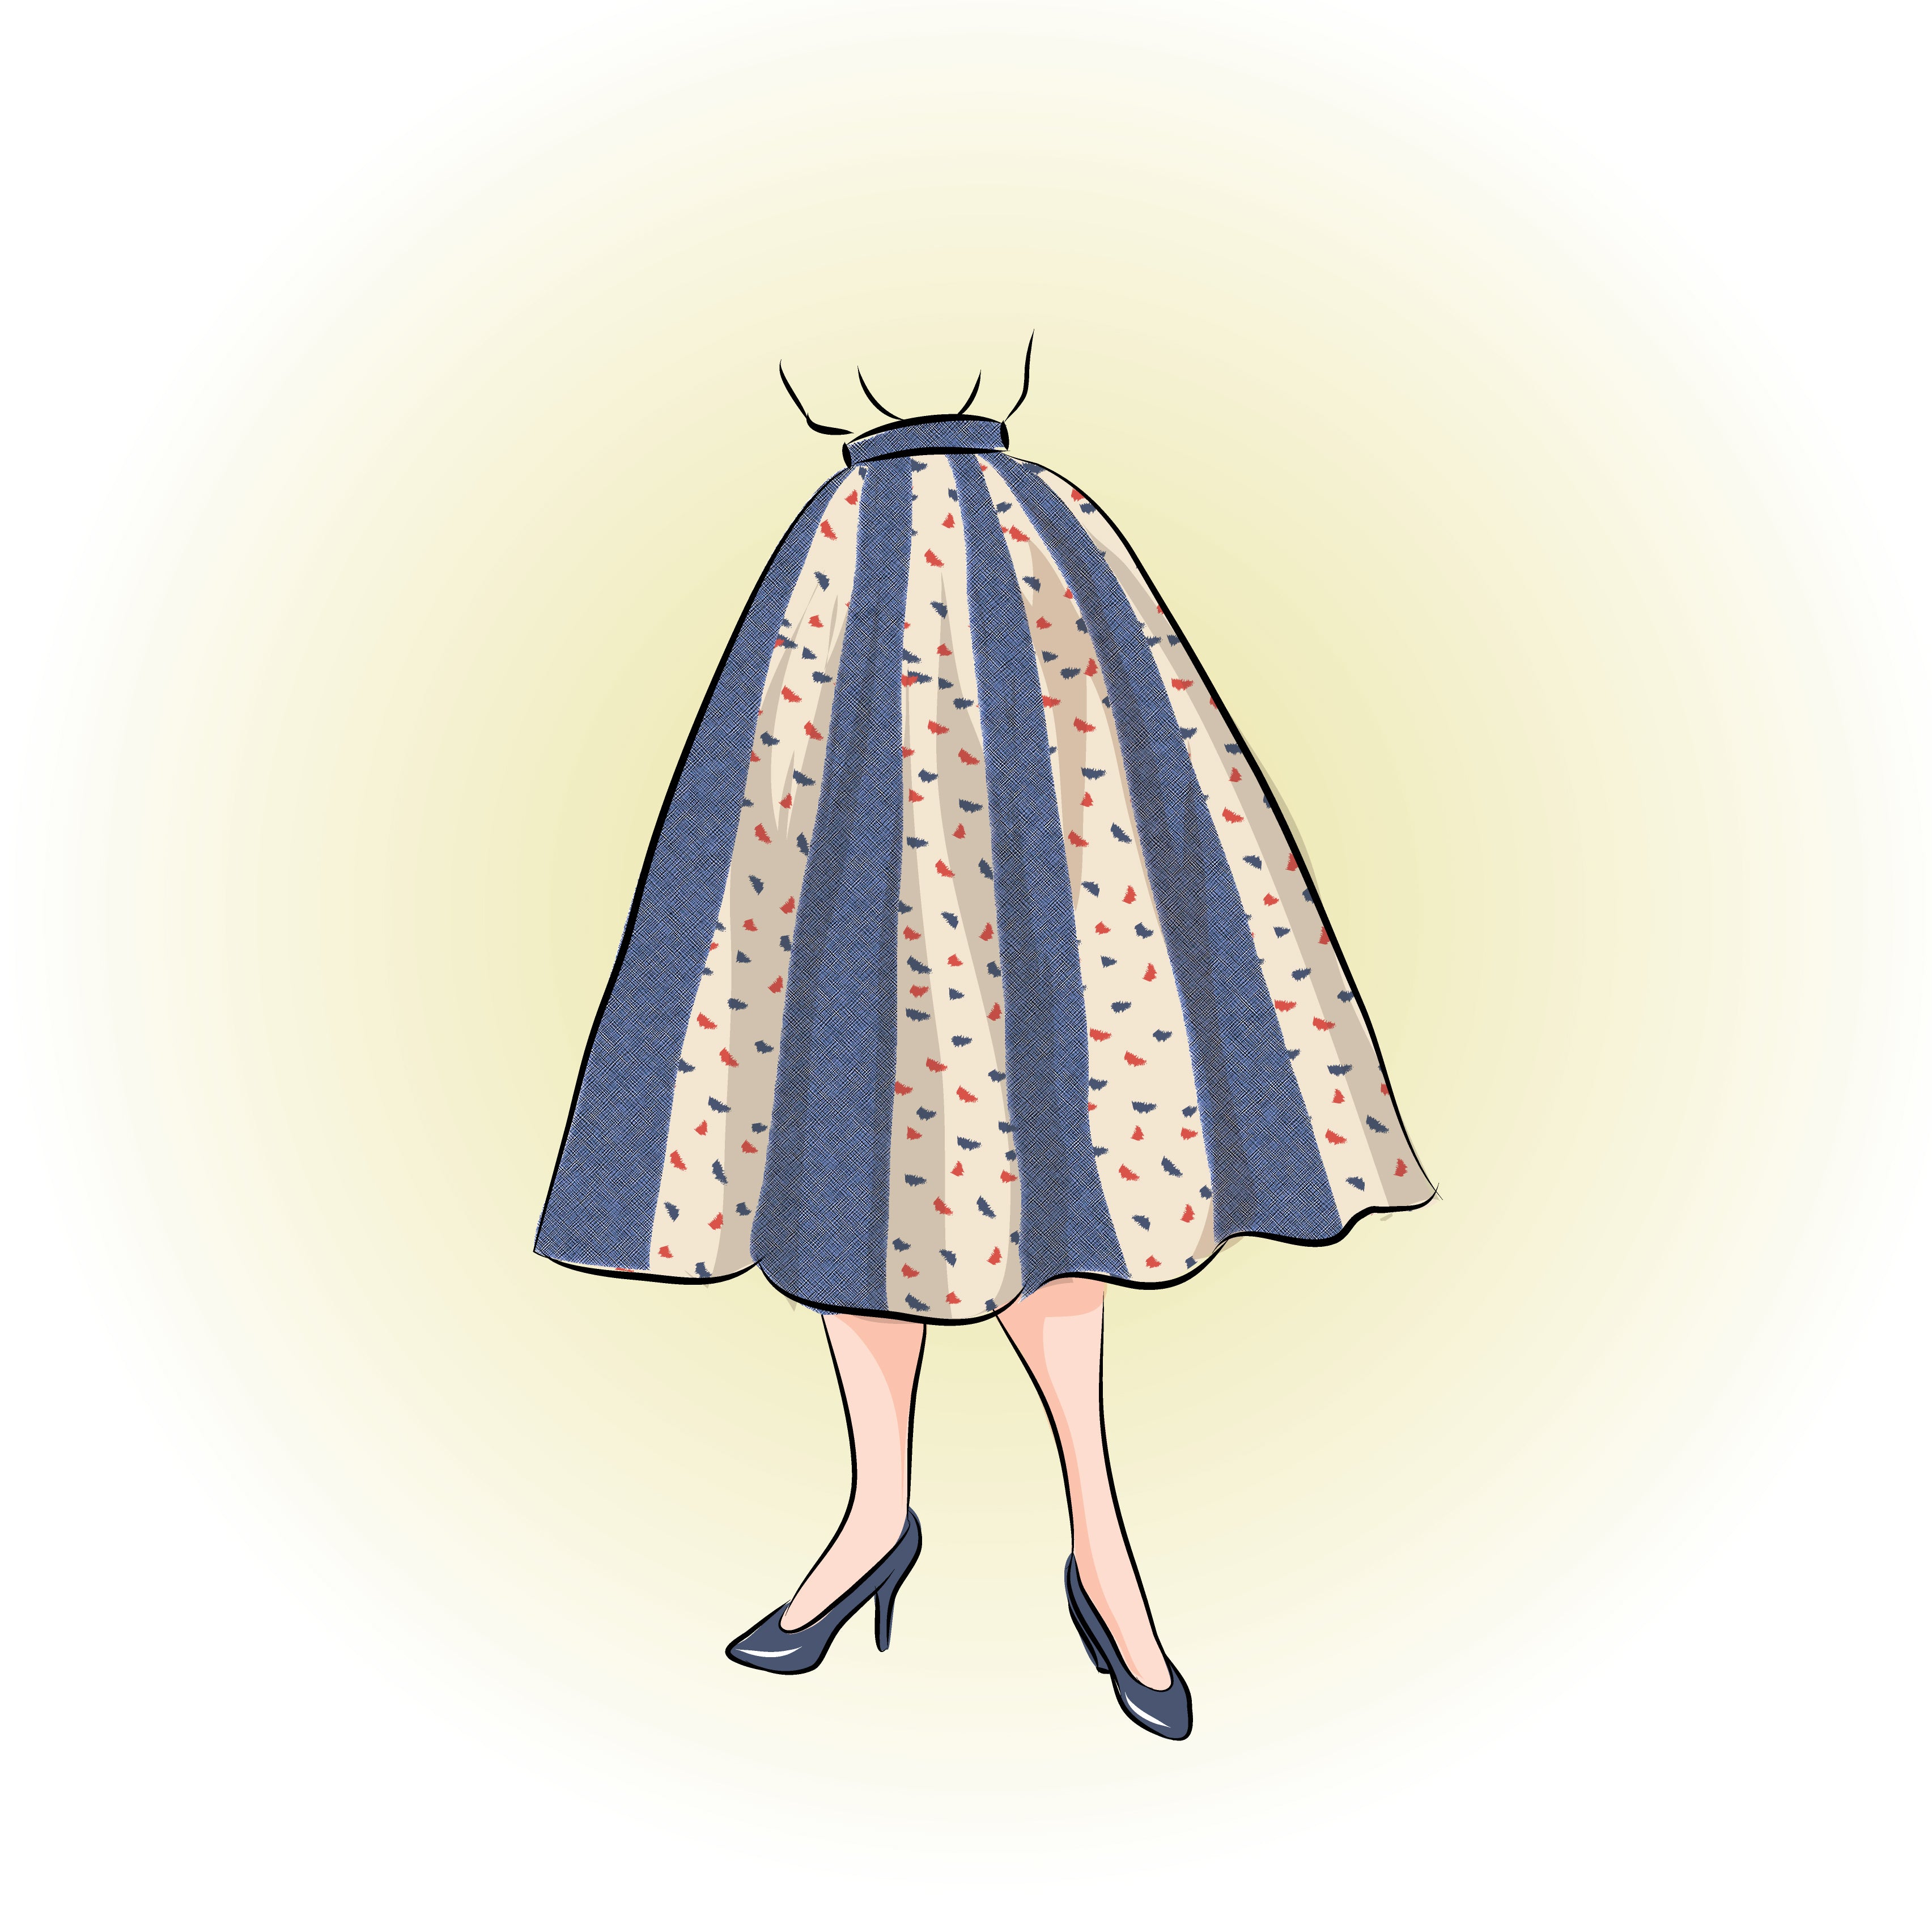 # 7701 - 1950's Umbrella Skirt -  Full Sized Print